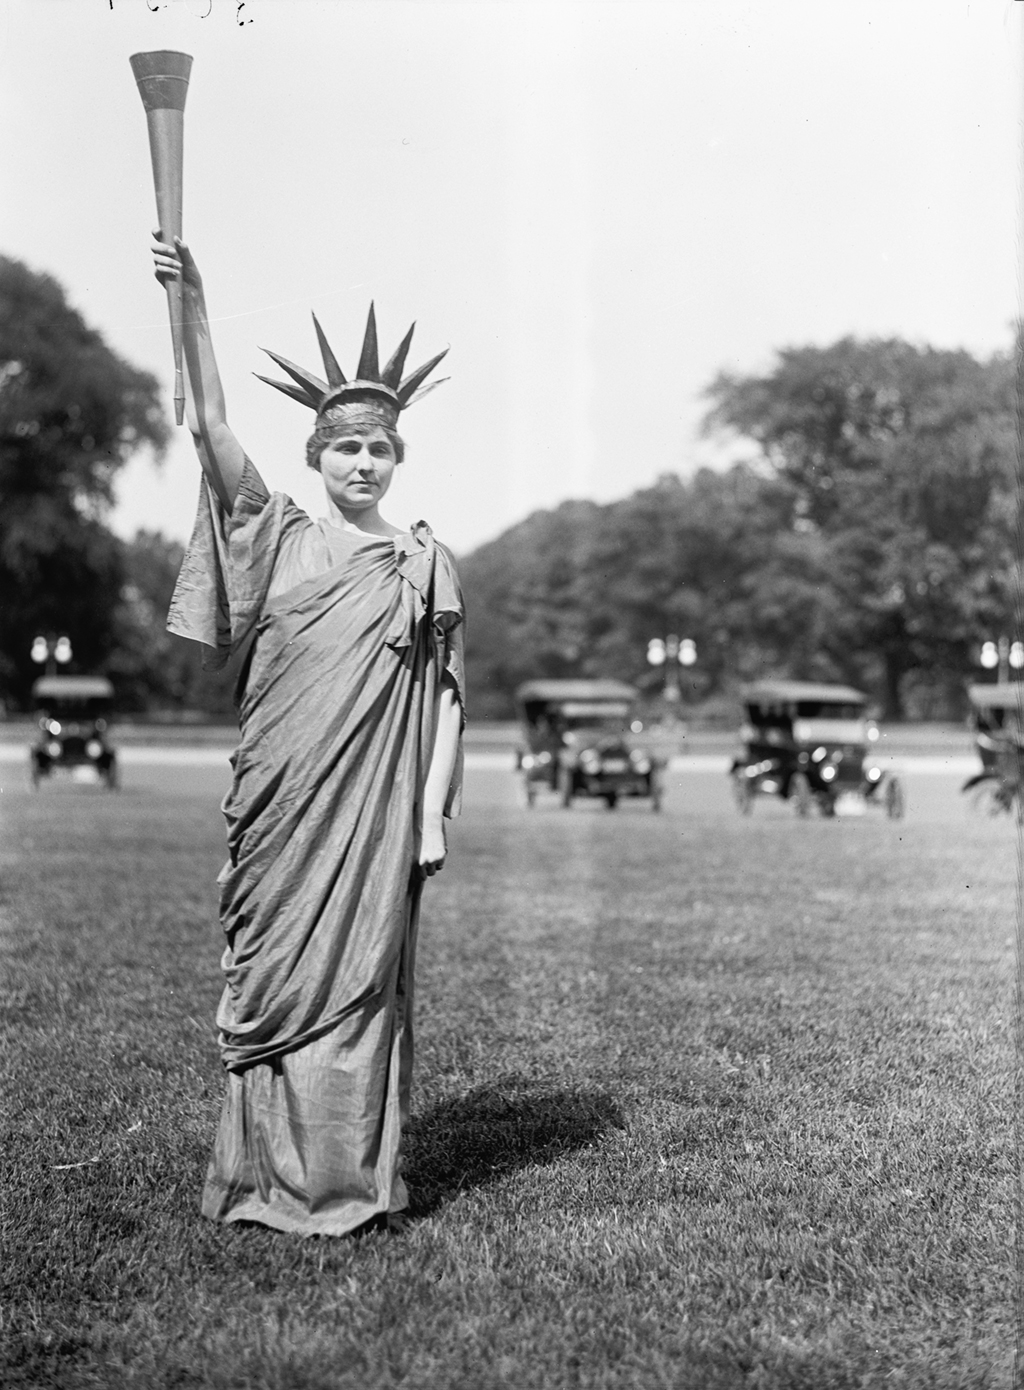 Photograph via Harris & Ewing Collection (Library of Congress). 